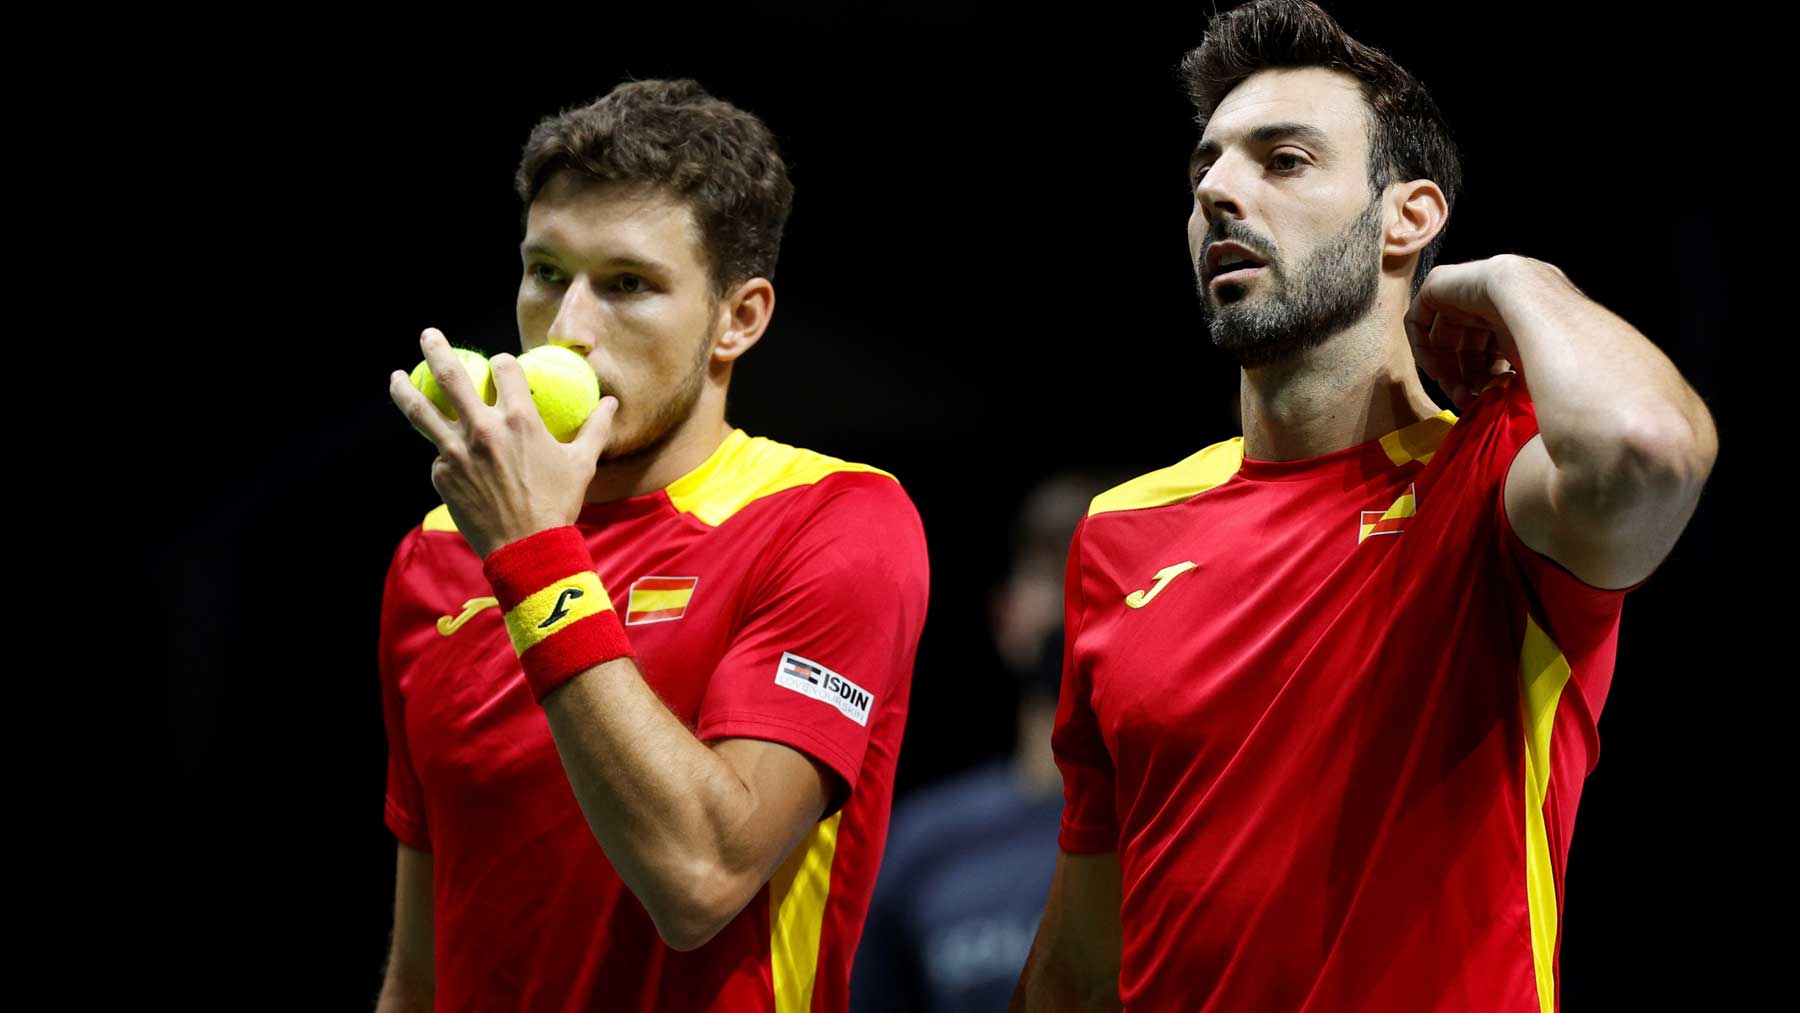 Carreño y Granollers durante el partido de dobles de la Copa Davis entre España y Ecuador (EFE)